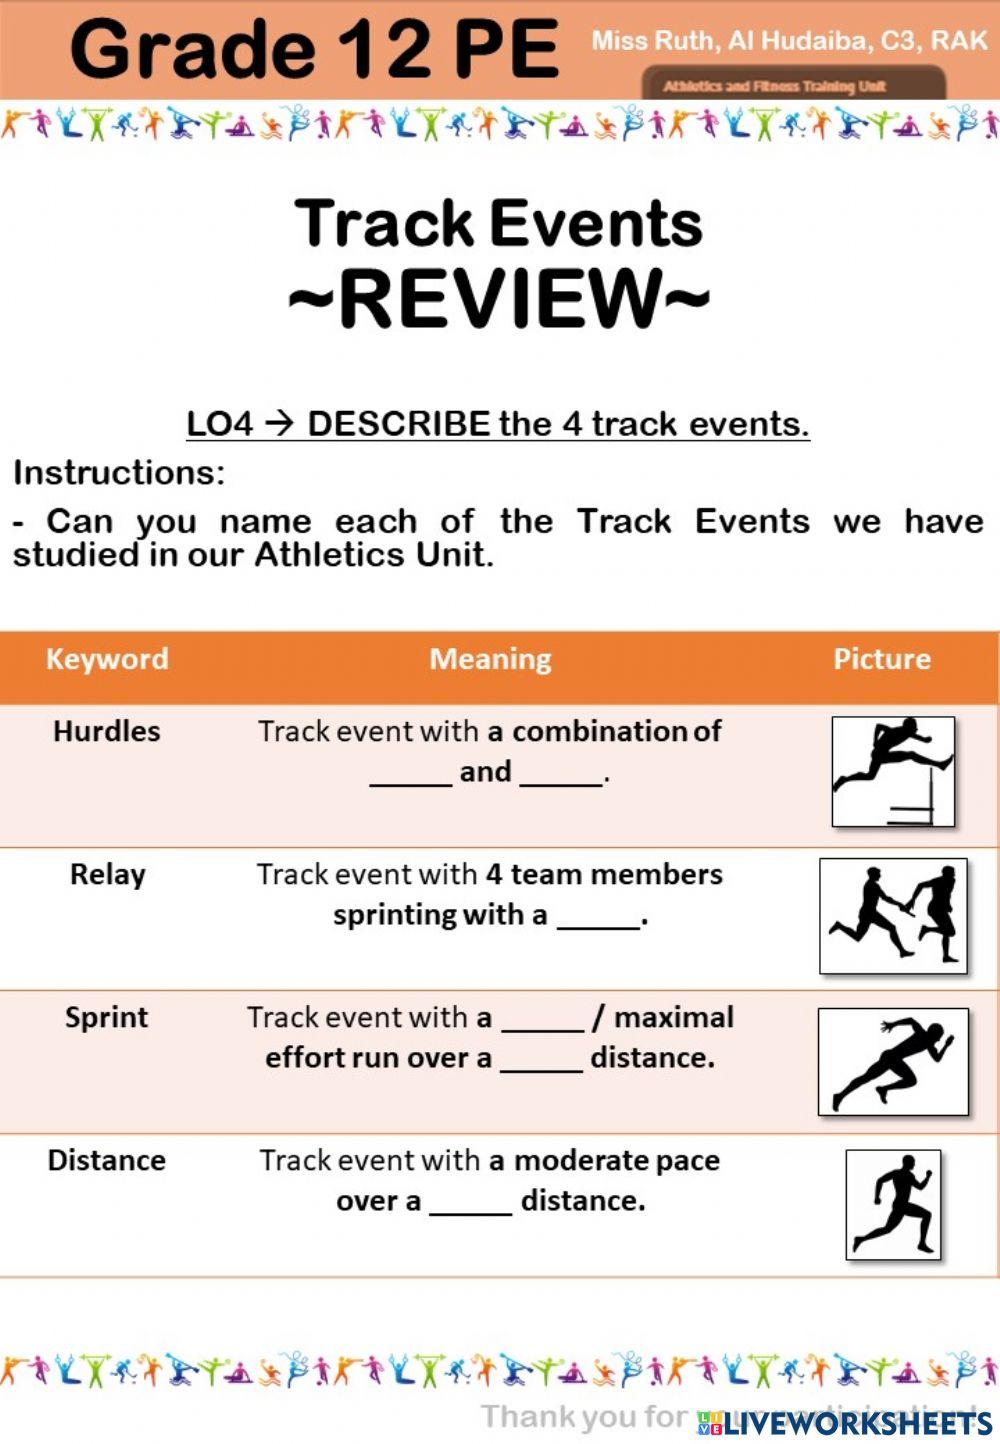 Lesson 06 - LO4 - DESCRIBE the 4 Track Events